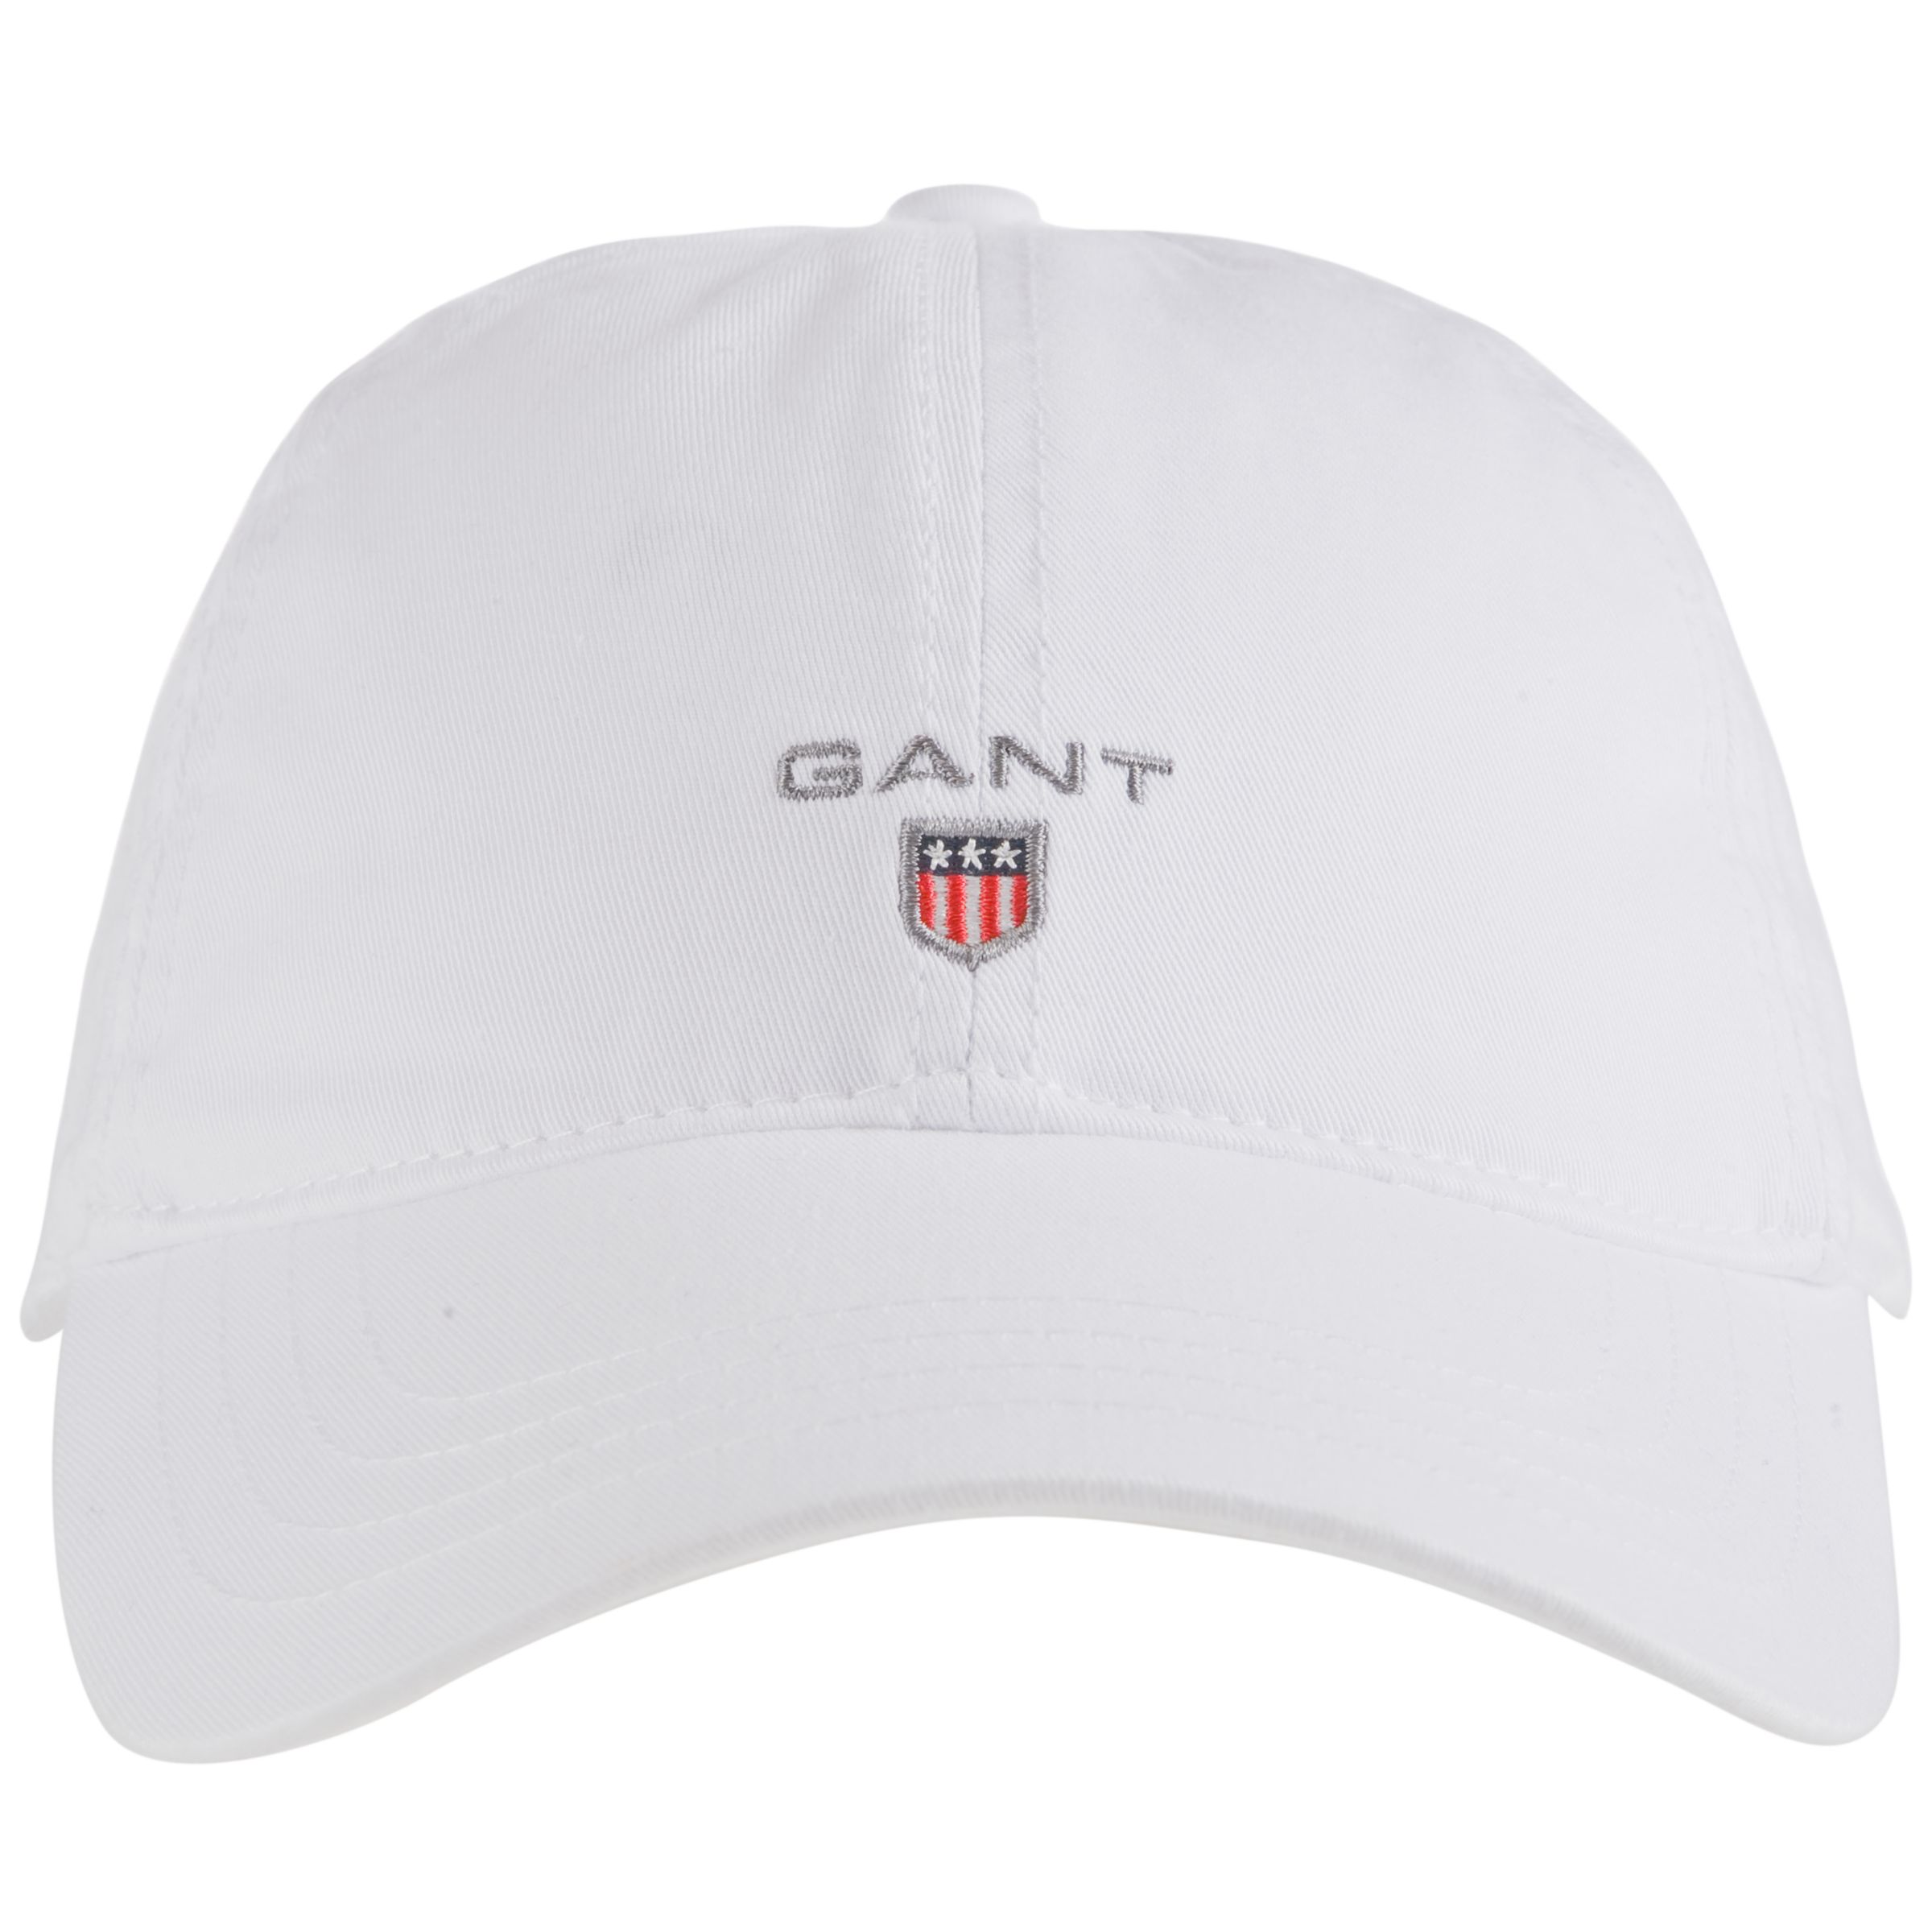 Gant Classic Cotton Baseball Cap, White